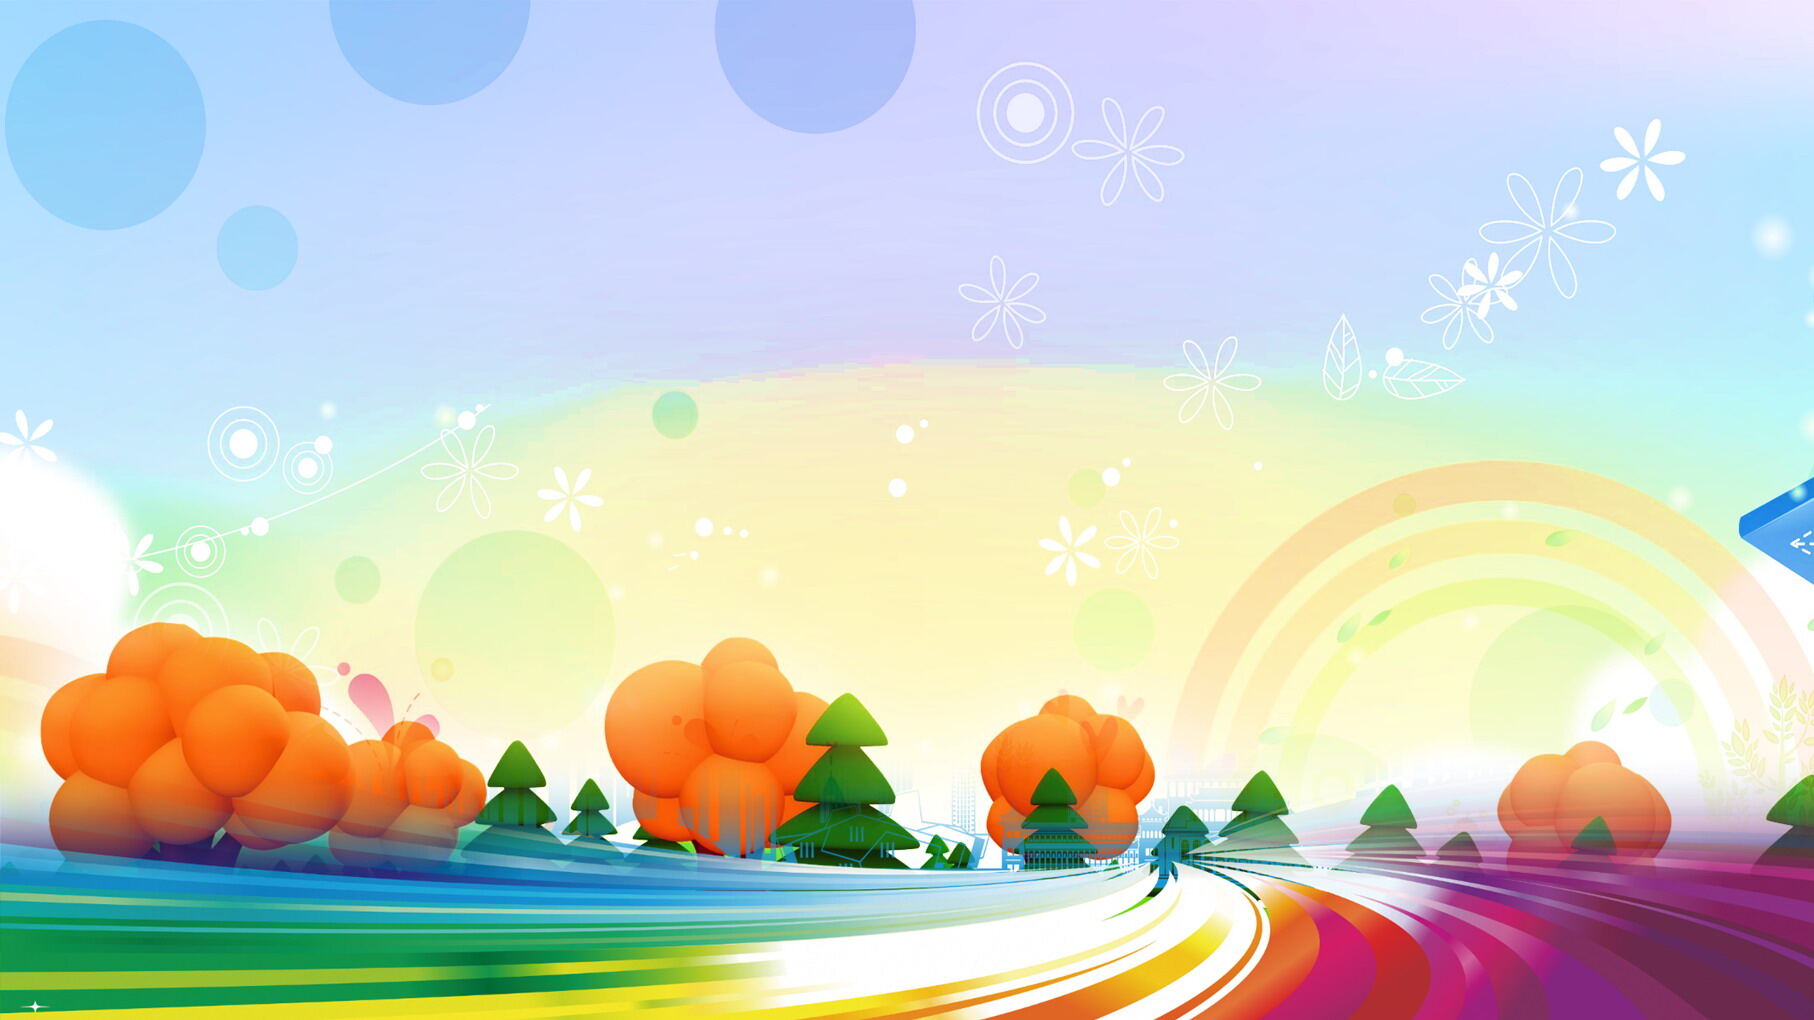 彩色卡通树林PPT背景图片